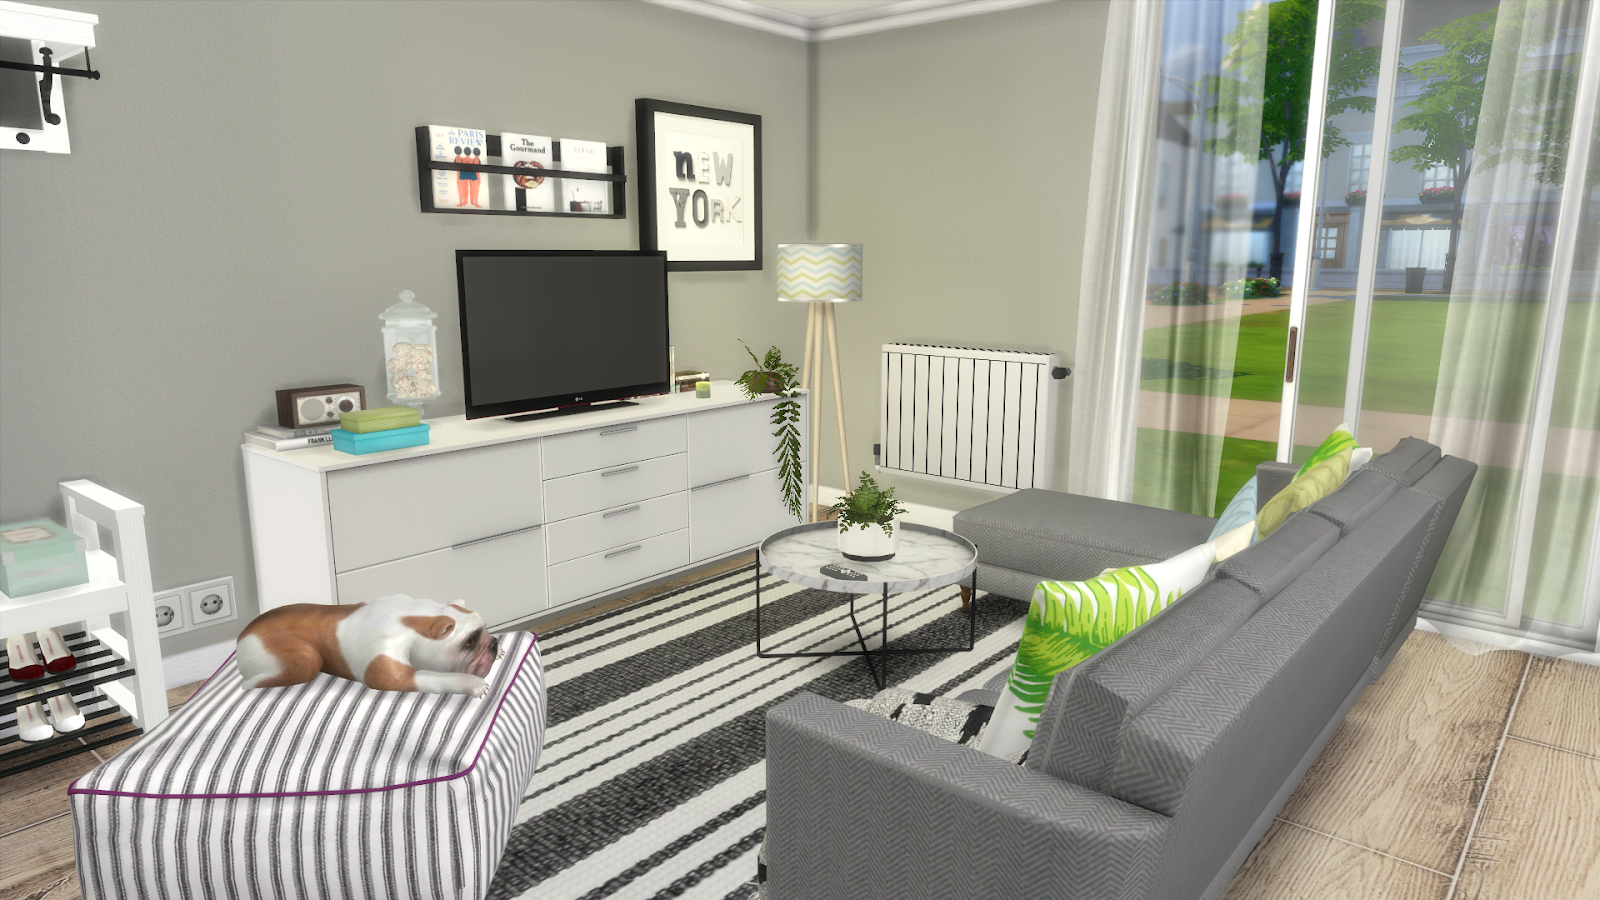 Meubles IKEA pour votre cuisine Sims 4 : intégration, personnalisation et plus encore